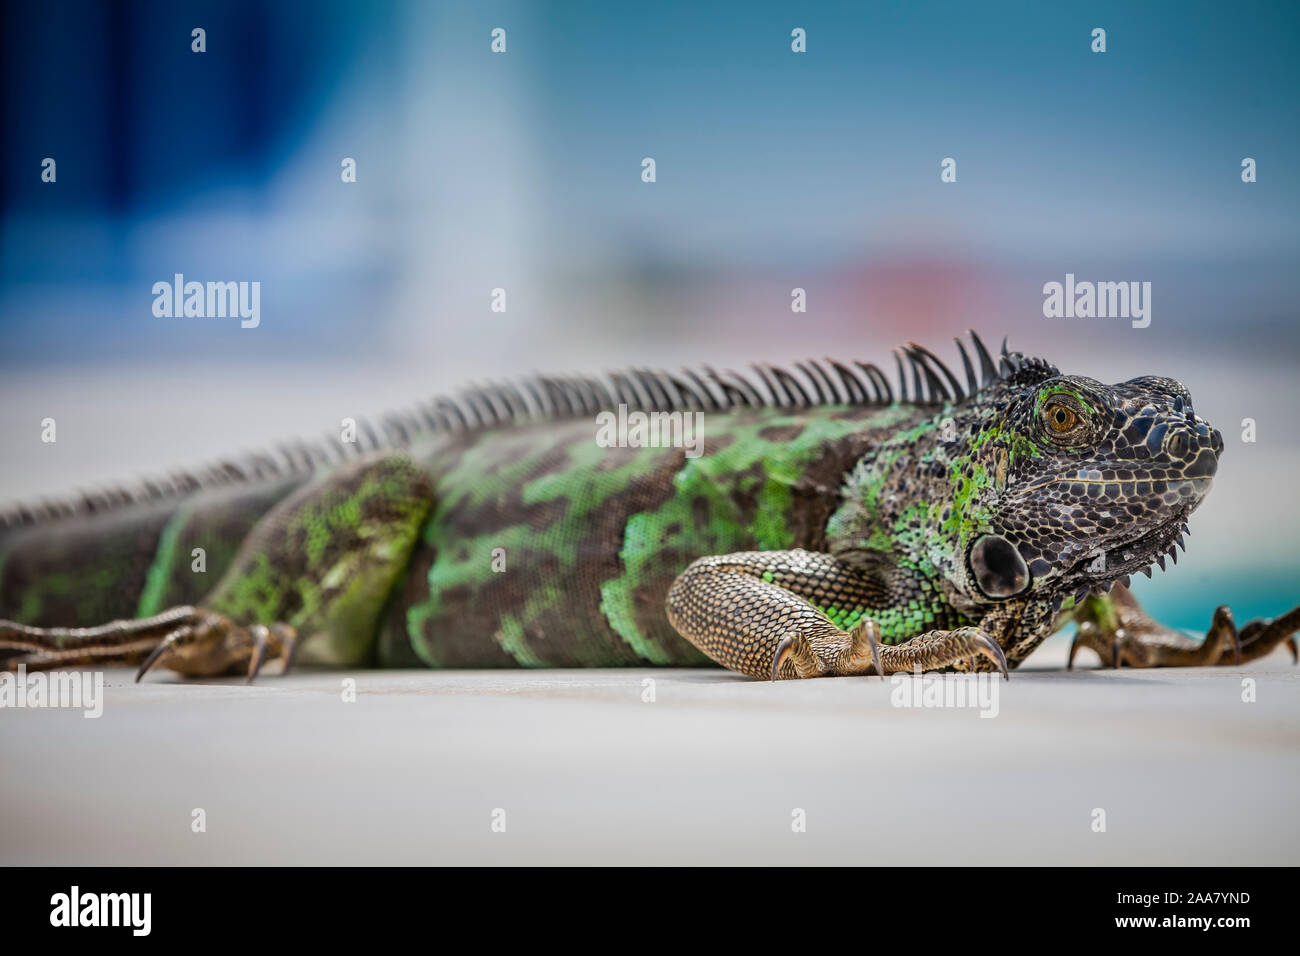 Nahaufnahme eines grünen Leguans (geringe Schärfentiefe) Stockfoto